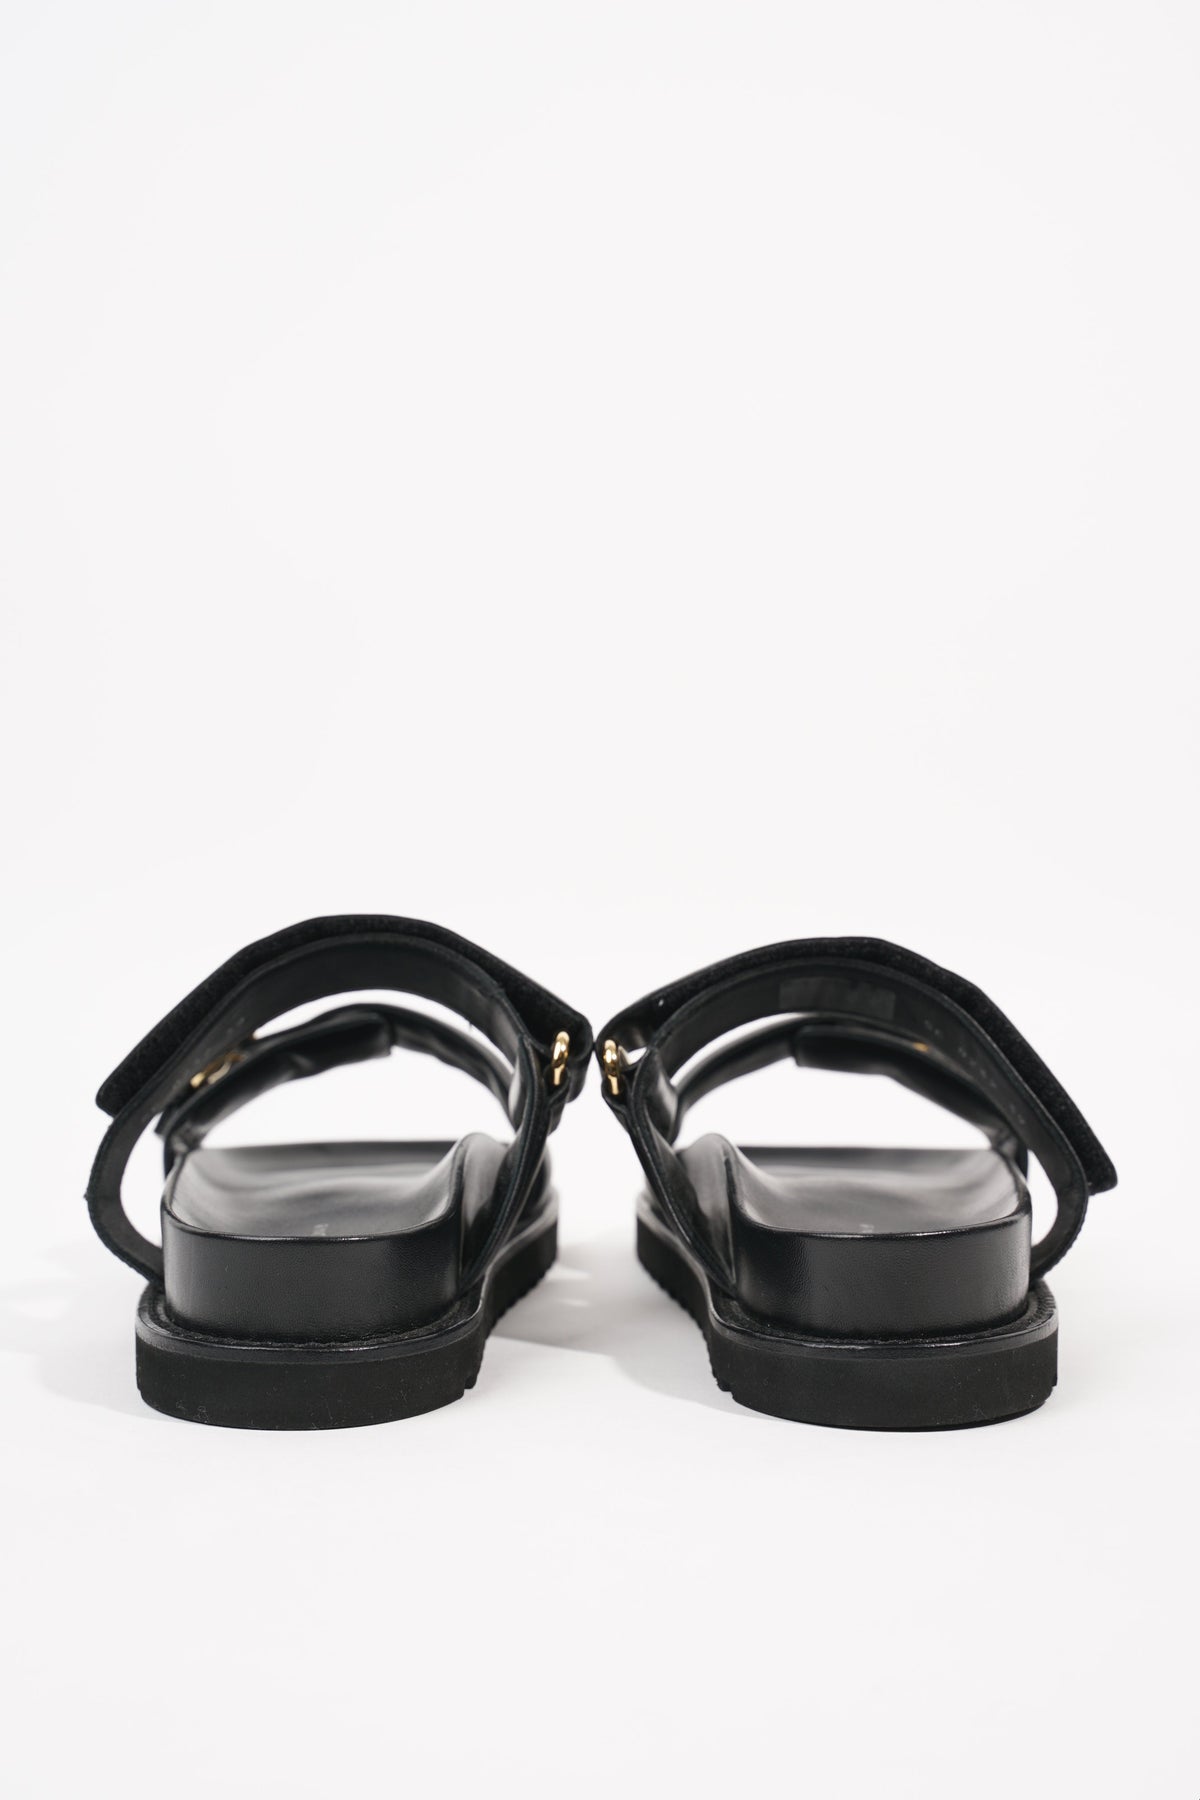 Louis Vuitton 2020 Paseo Flat Comfort Mule Sandals - Black Sandals, Shoes -  LOU393845